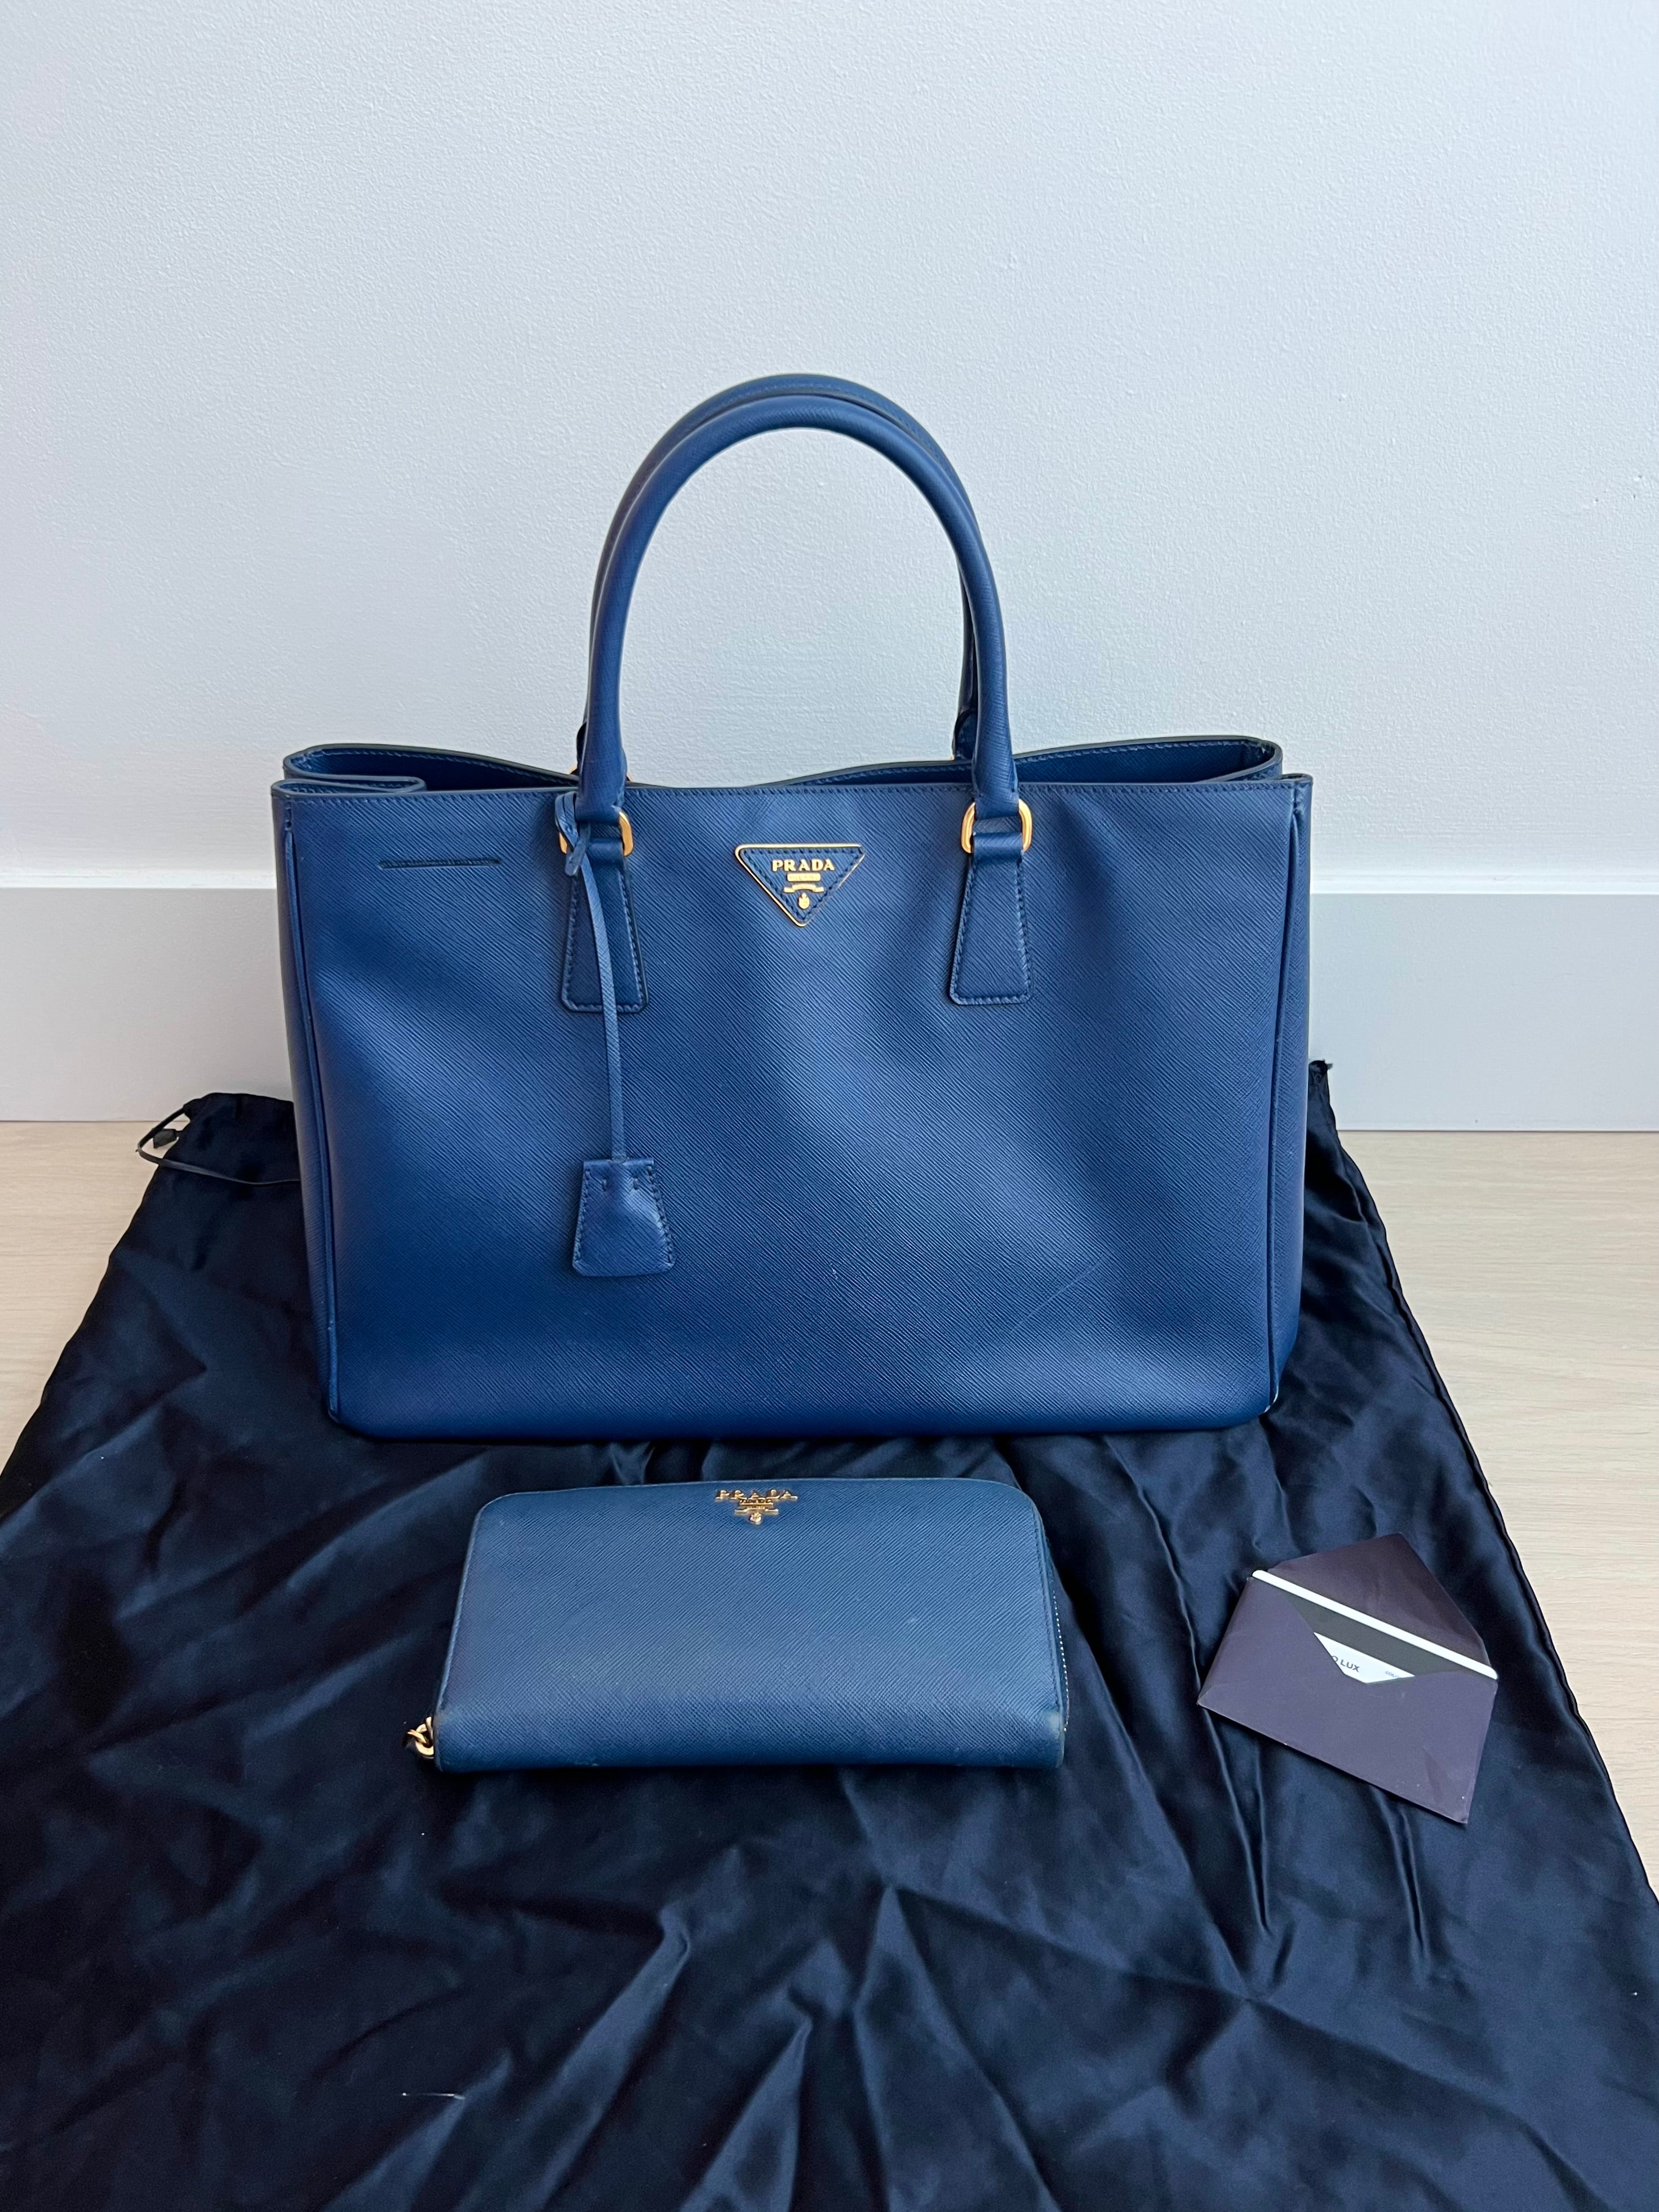 Prada Saffiano Tote Bag – Beccas Bags